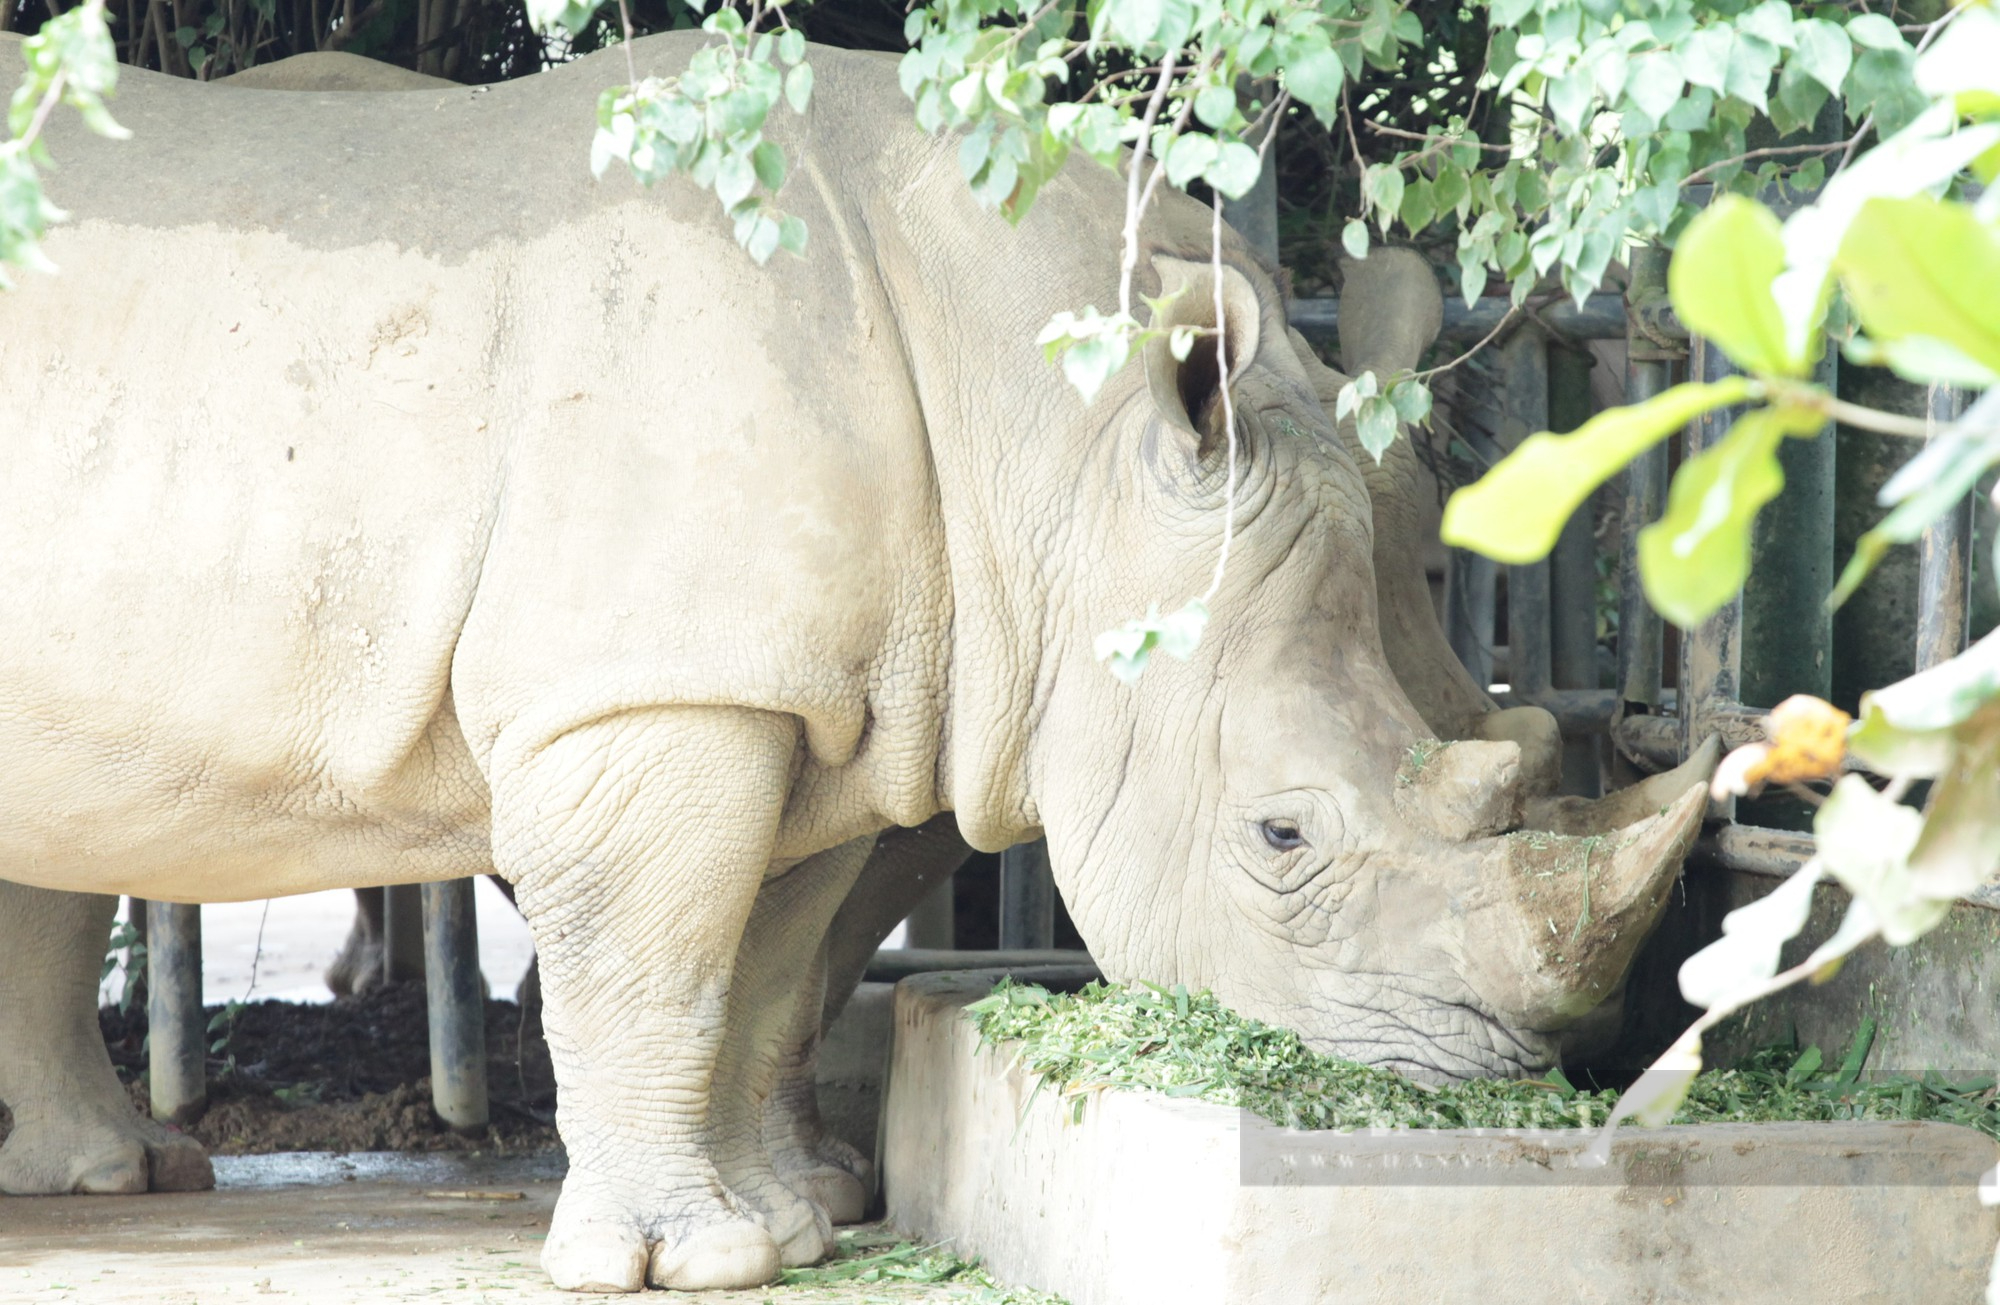 Cận cảnh cuộc sống của những chú tê giác 2 sừng đang được nuôi tại Nghệ An - Ảnh 4.